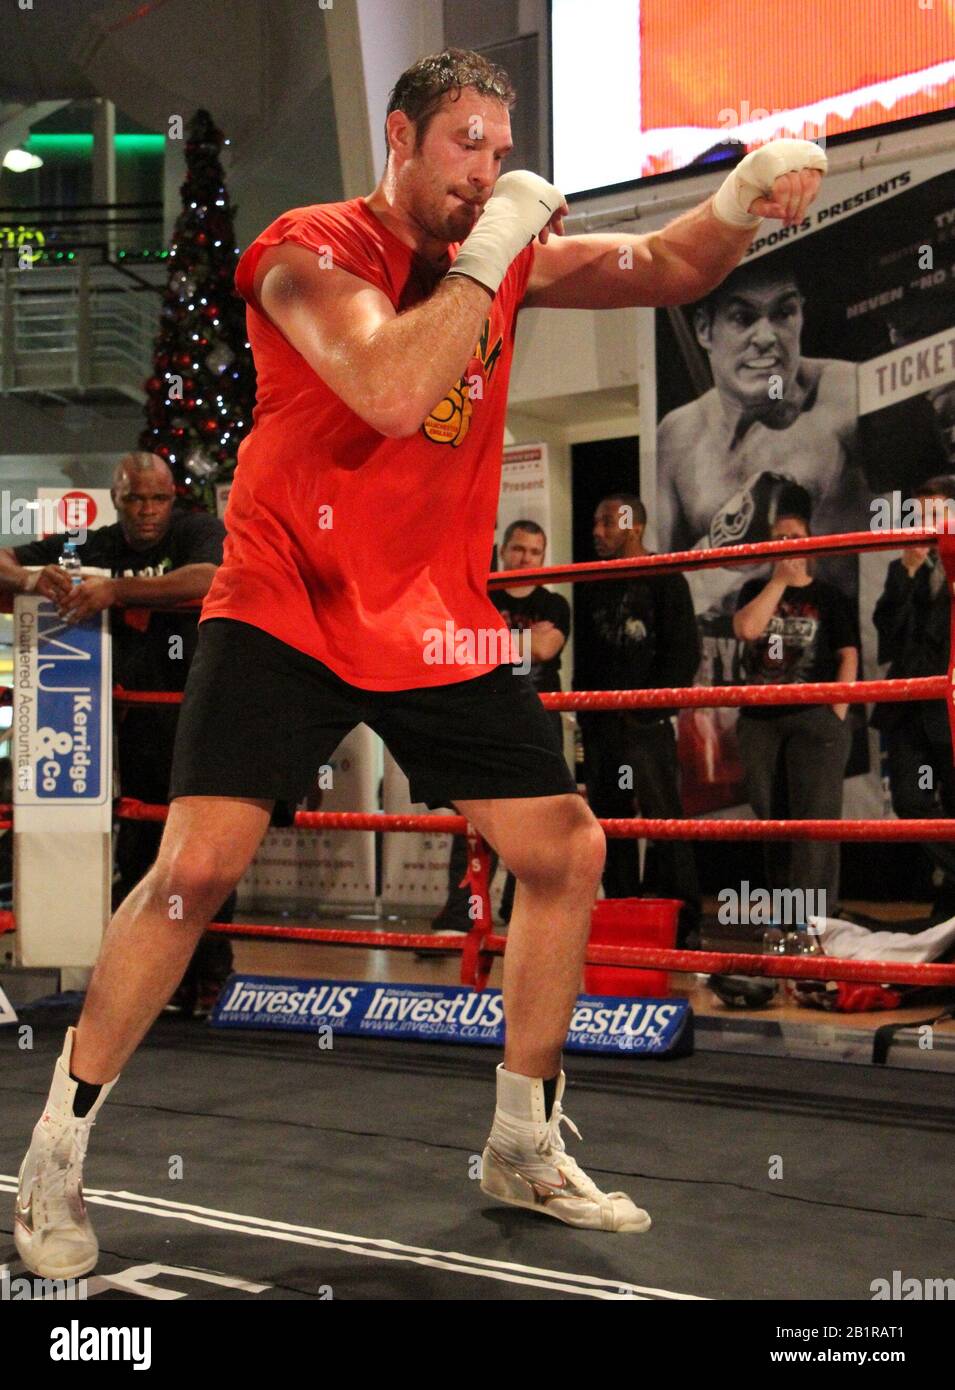 Manchester, Champion Du Monde De Boxe Britannique Tyson Fury, S'Entraîne Au Crédit De Trafford Centre Ian Fairbrother/Alay Stock Photos Banque D'Images